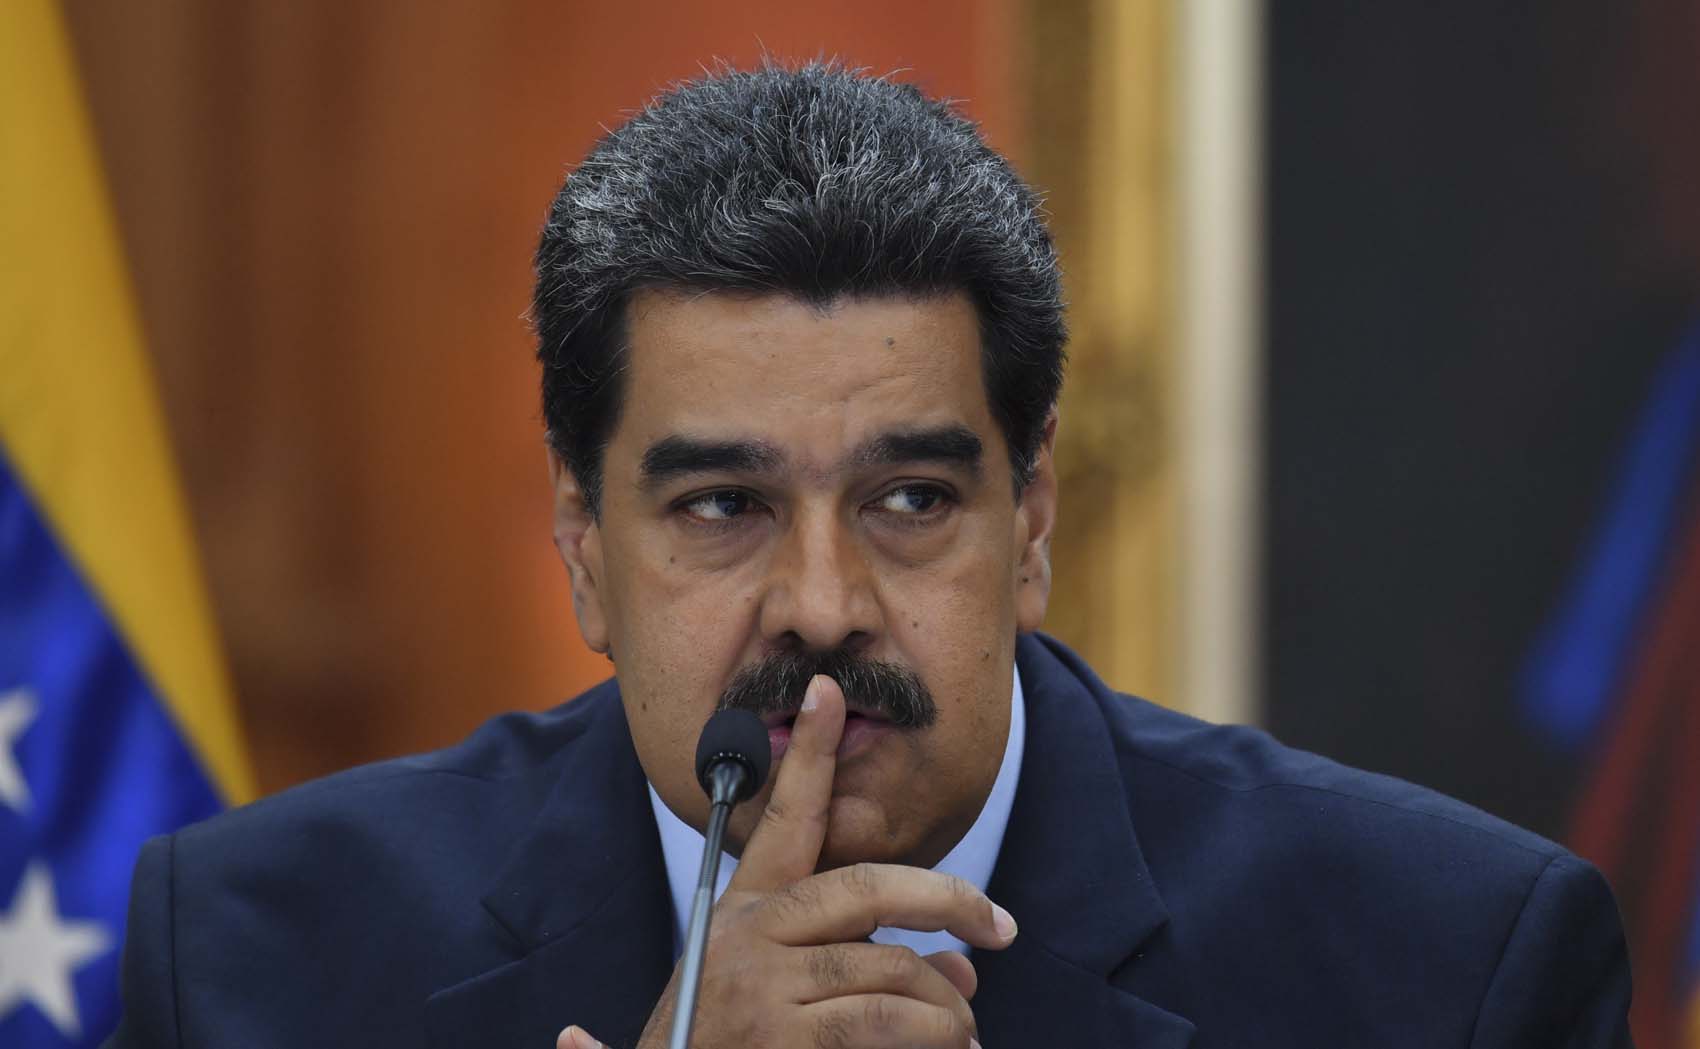 Estos países acompañaron a Maduro al TSJ… pero se abstuvieron de votar en contra de la resolución OEA